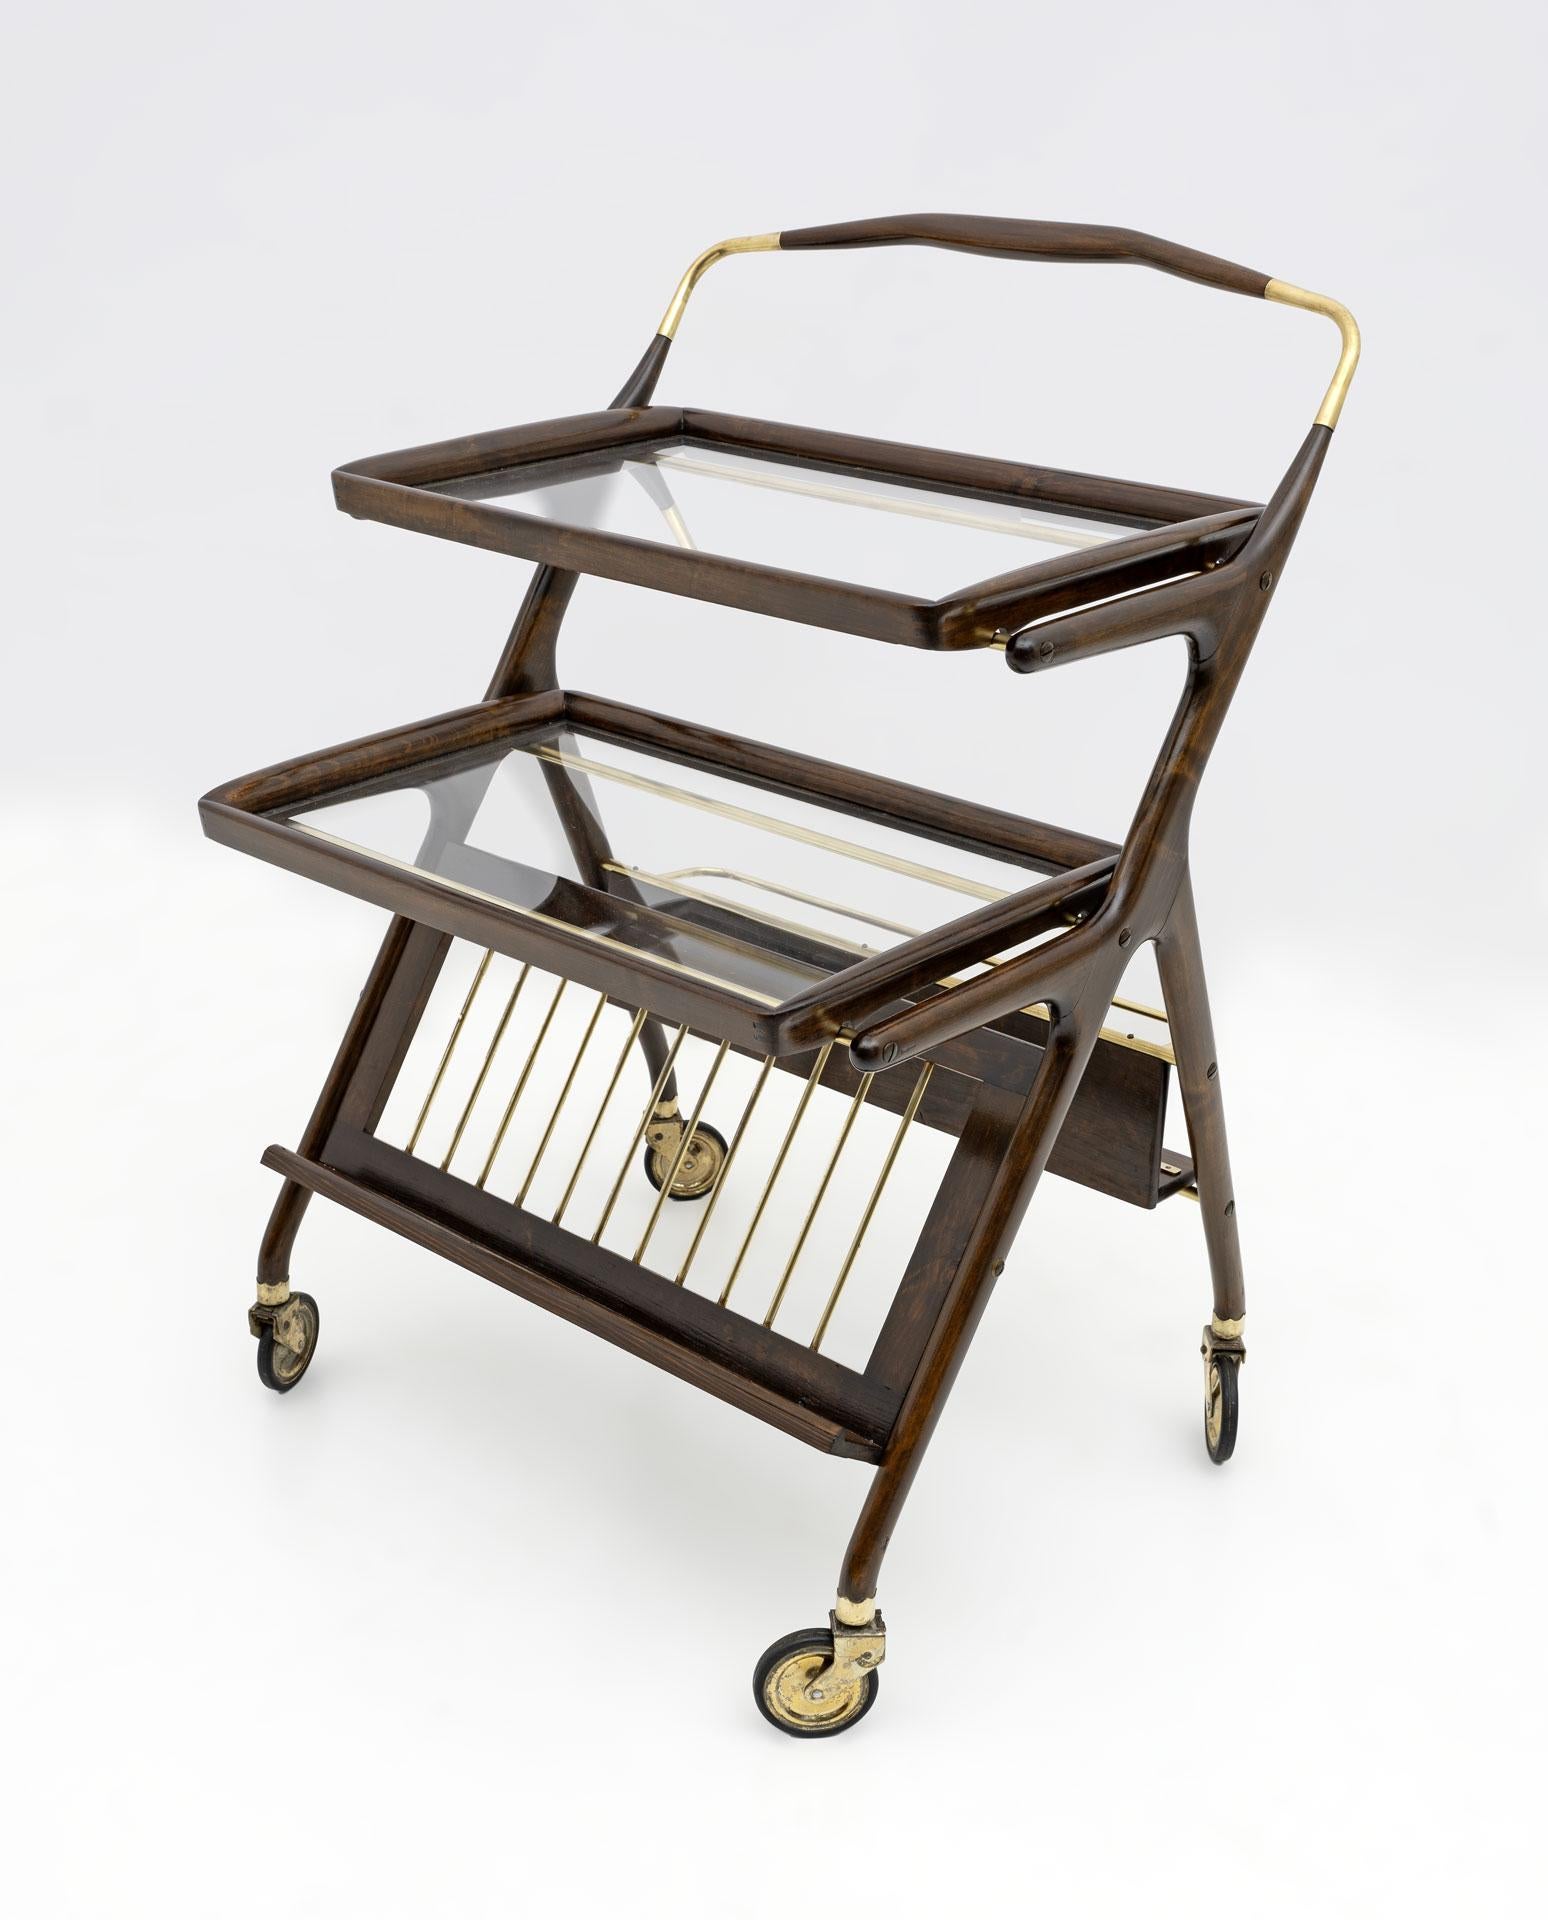 Ce chariot de bar en noyer et laiton a été conçu par Cesar Lacca pour Cassina dans les années 1950. Il est doté de deux plateaux amovibles et d'une tablette inférieure avant et arrière pour les bouteilles.
Entièrement restauré et poli à la